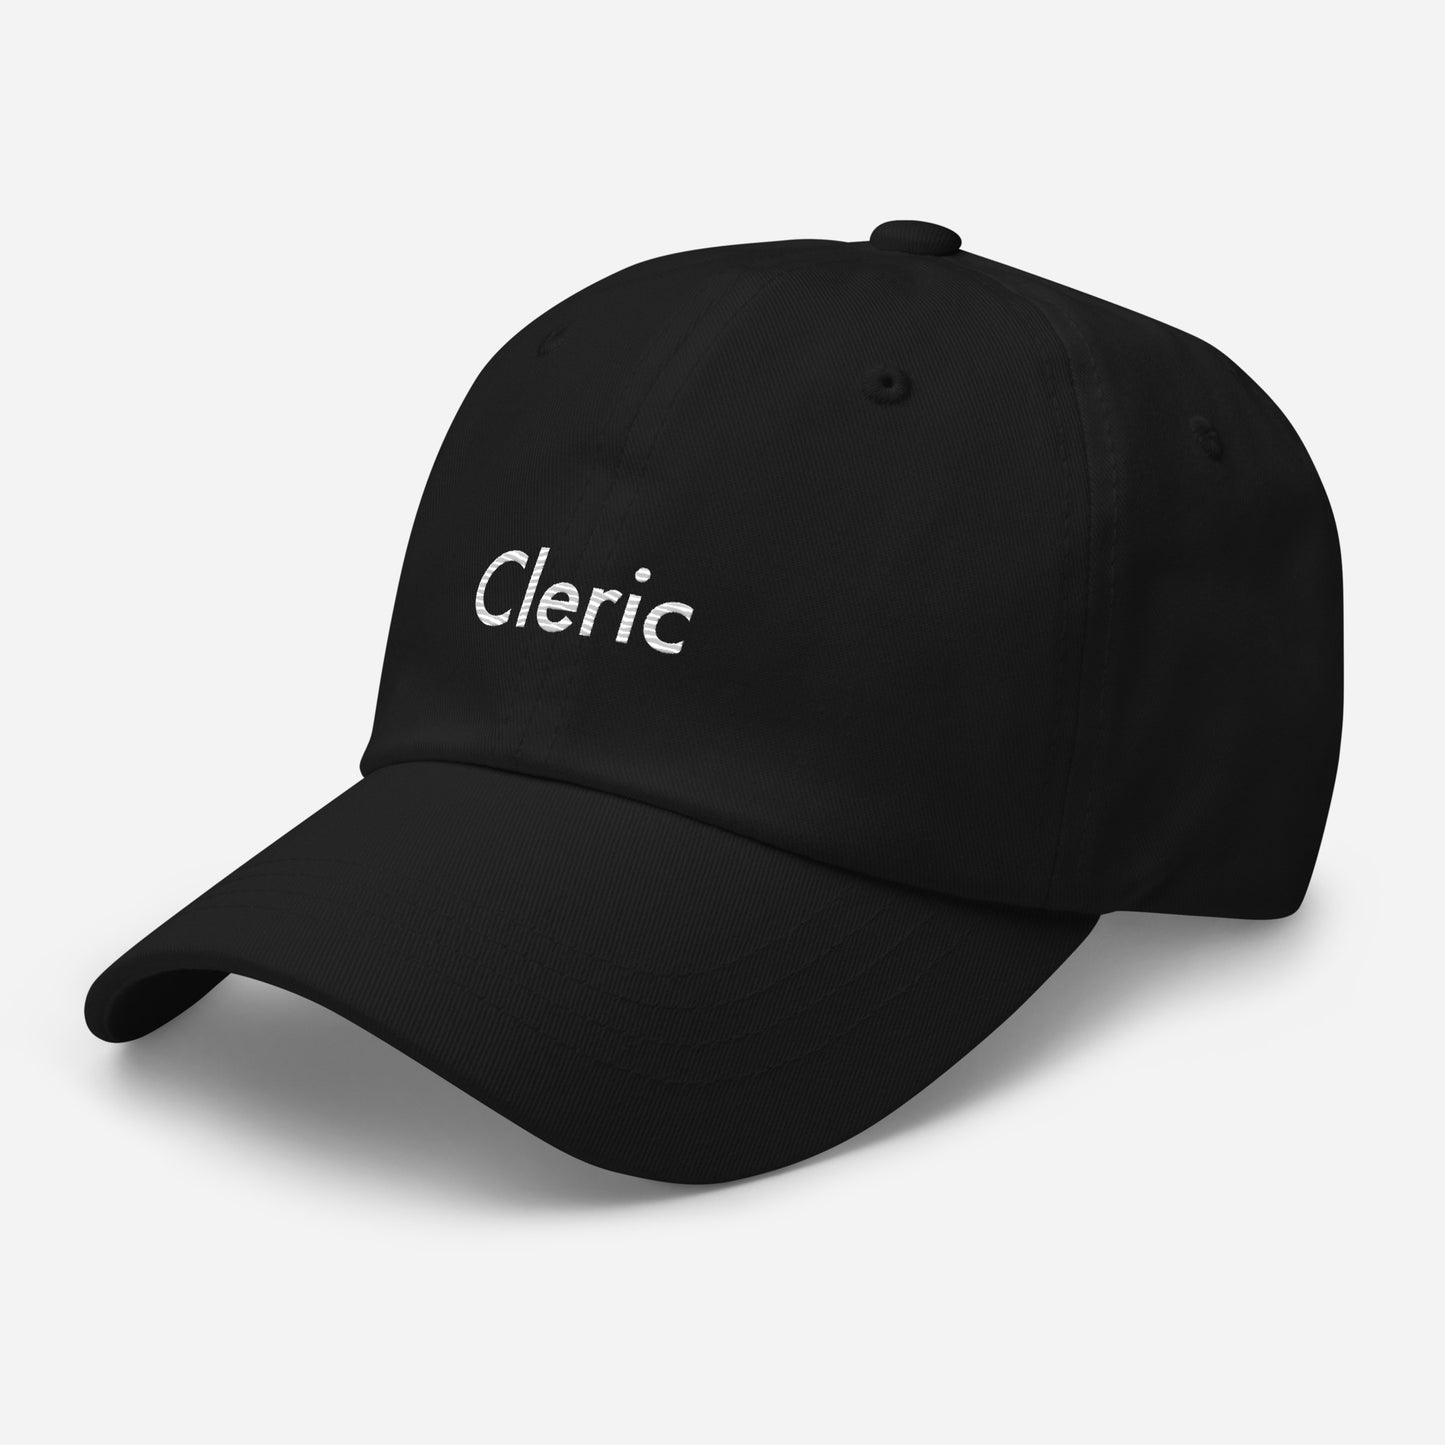 Cleric - Black Hat